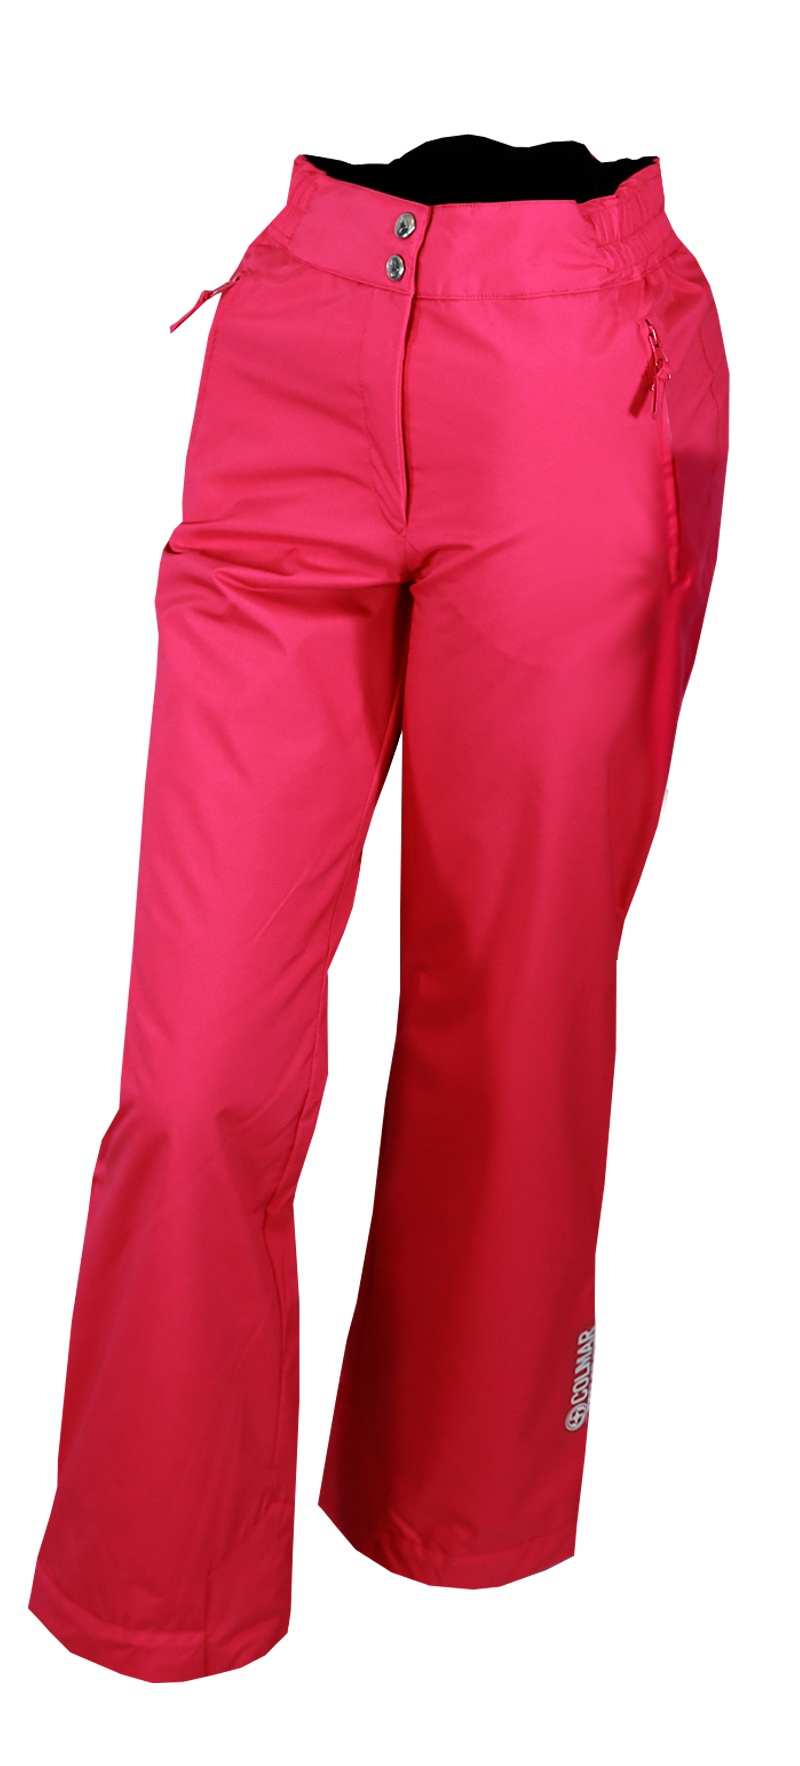 Kalhoty Colmar Ladies Pants 0443N Pink model 2015/16 - Teamsport